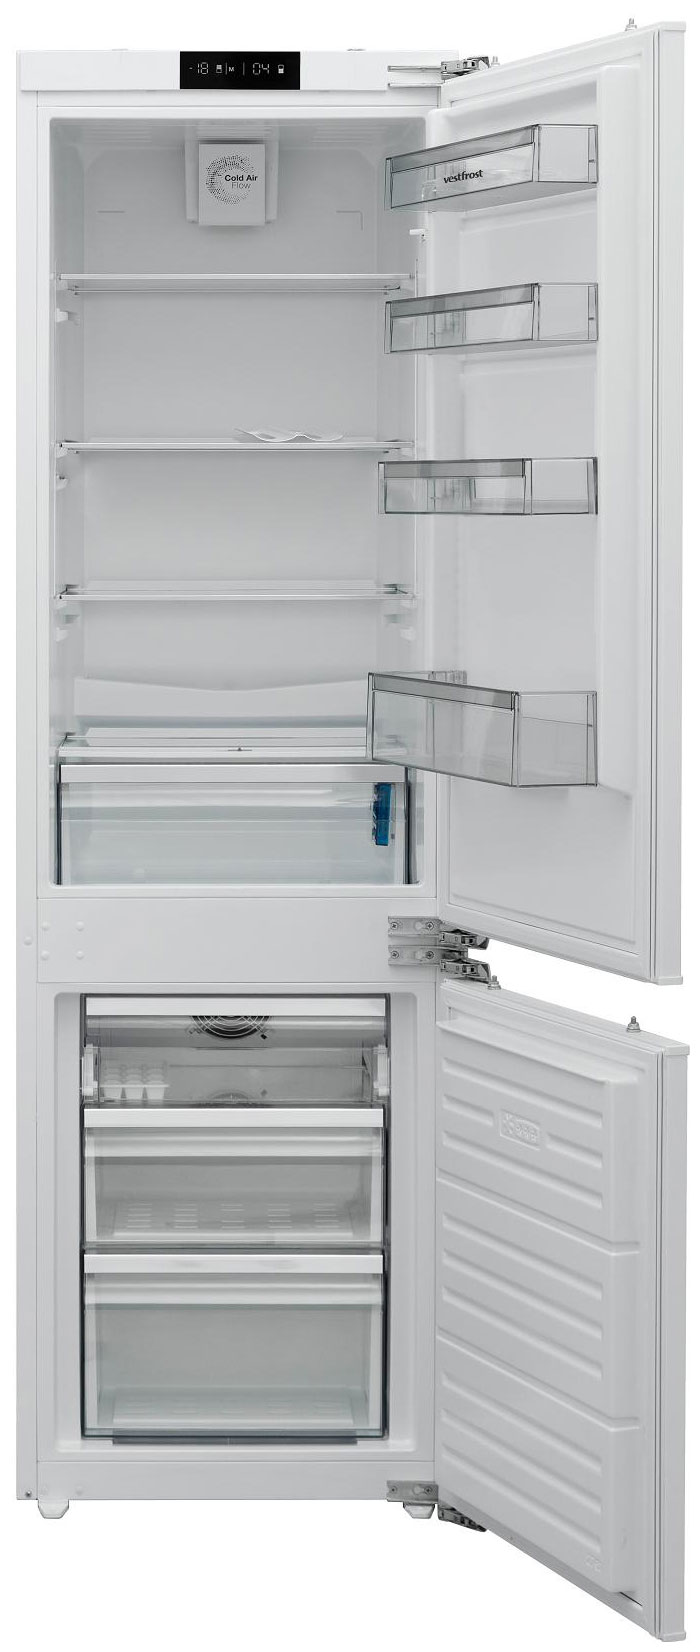 Встраиваемый двухкамерный холодильник Vestfrost VFBI17F00 встраиваемый двухкамерный холодильник ascoli adrf310webi